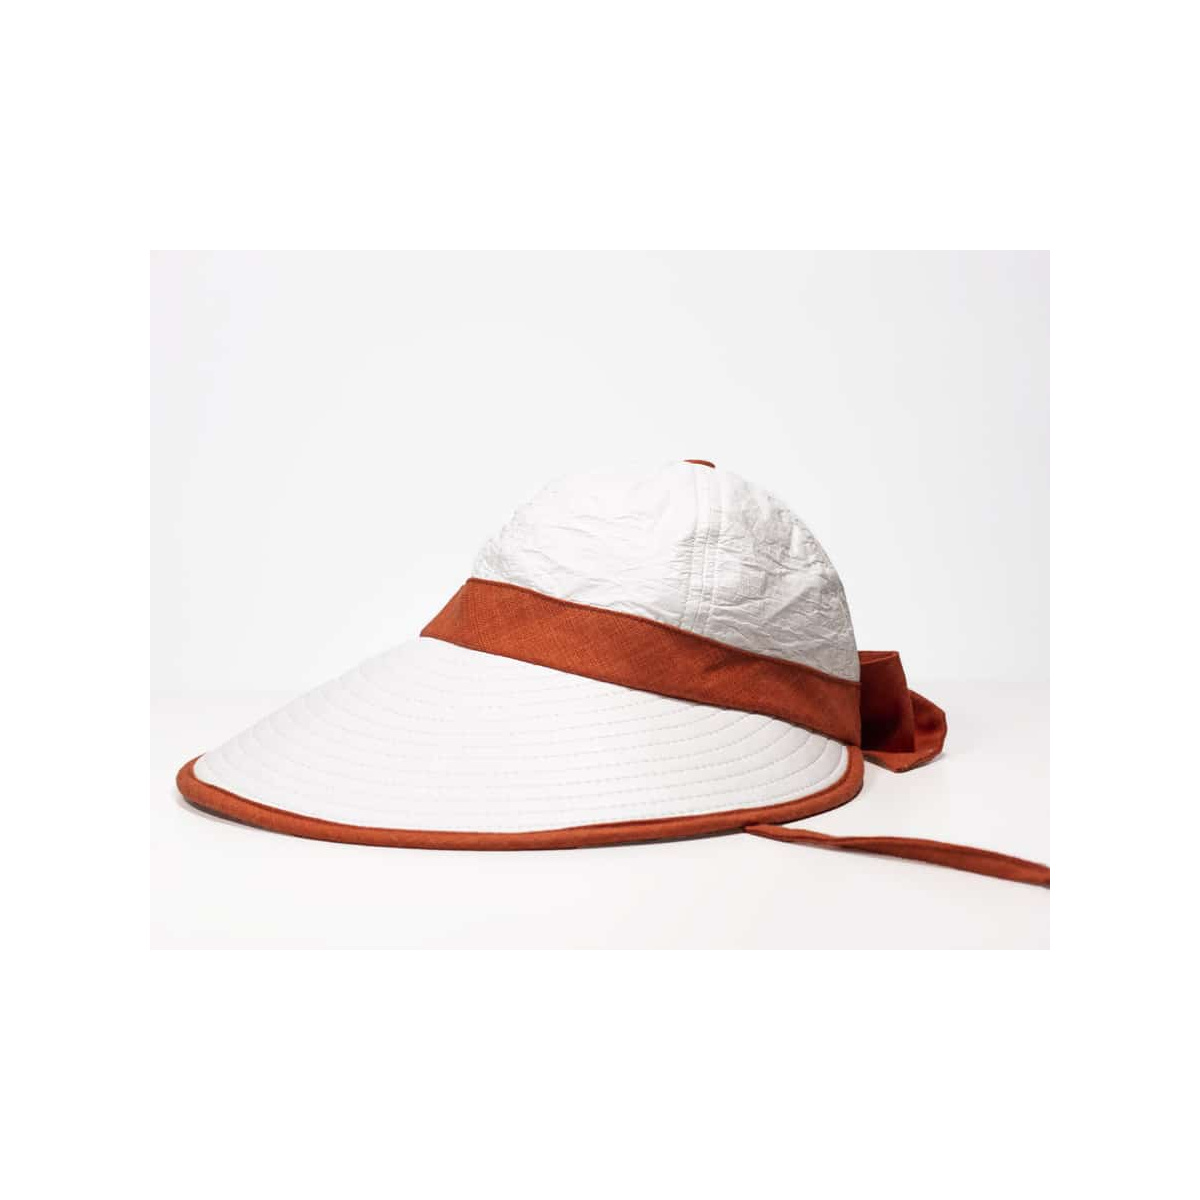 Headband terracota Femmes Accessoires Chapeaux & casquettes Bandeaux 